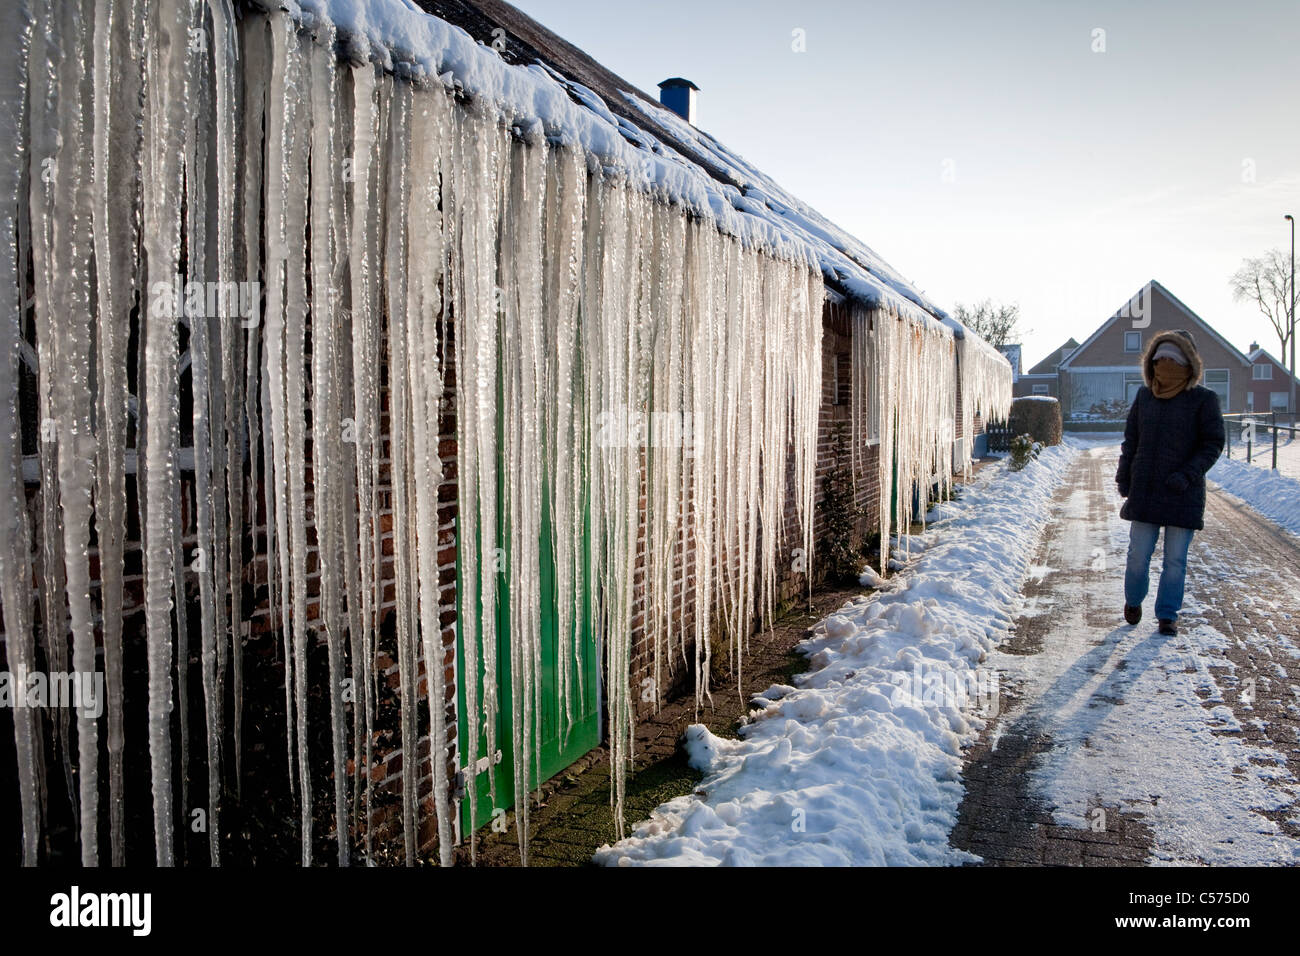 Niederlande, Staphorst, Winter, Eiszapfen auf Bauernhof Dach Stockfoto